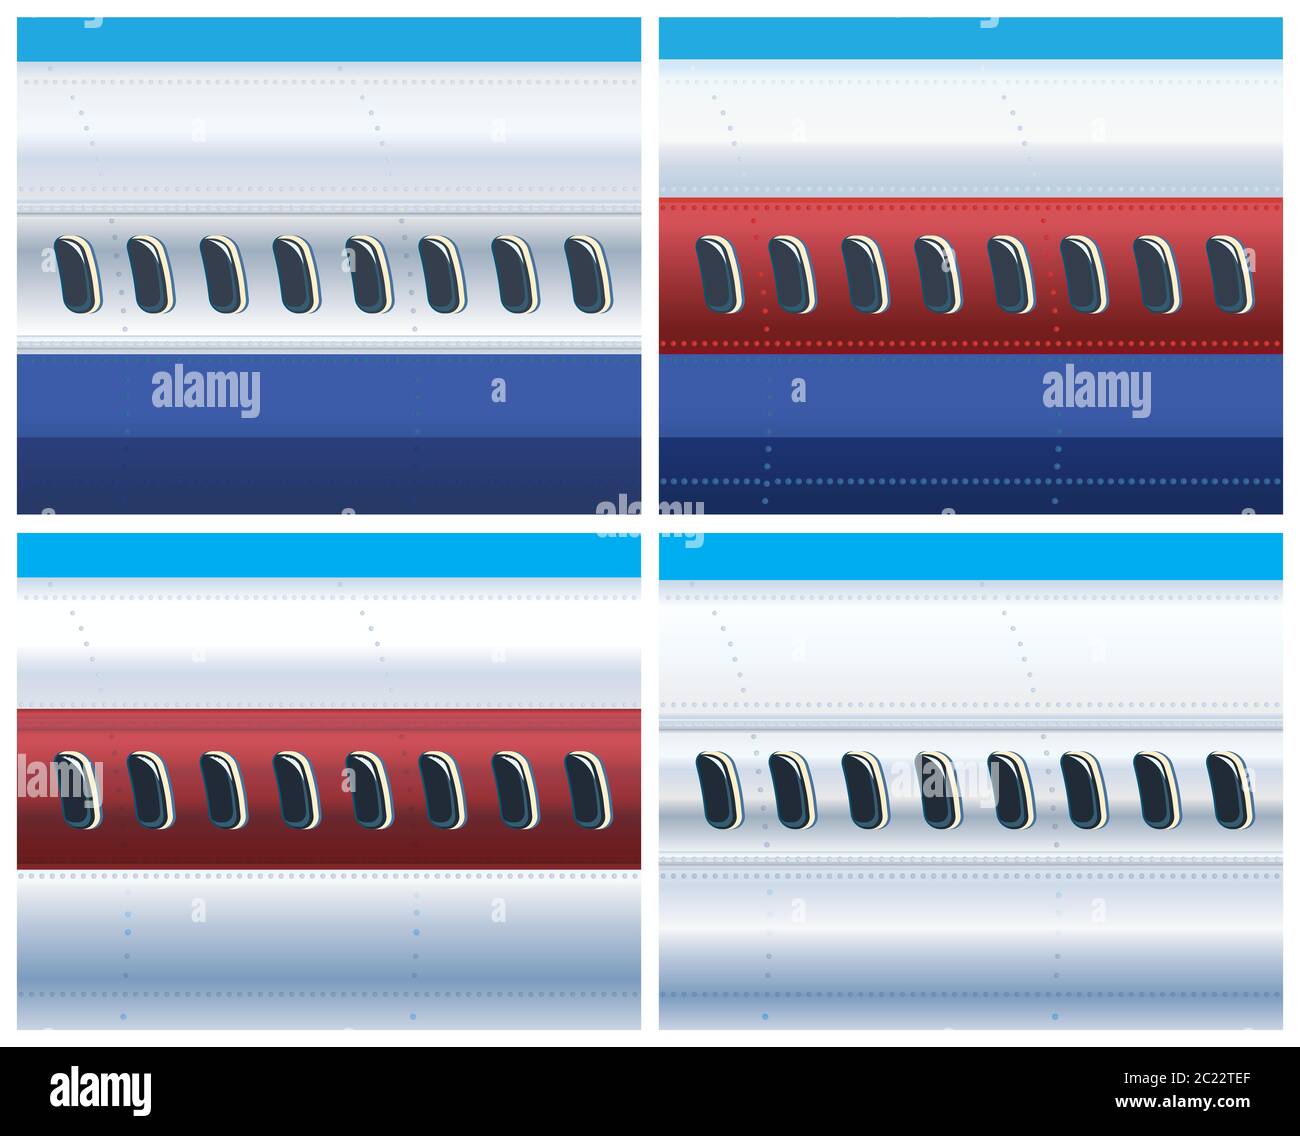 Illustrazione vettoriale sul tema dell'aviazione e del trasporto aereo. La fusoliera di un aereo commerciale in diversi colori. Immagine orizzontale senza giunture Illustrazione Vettoriale